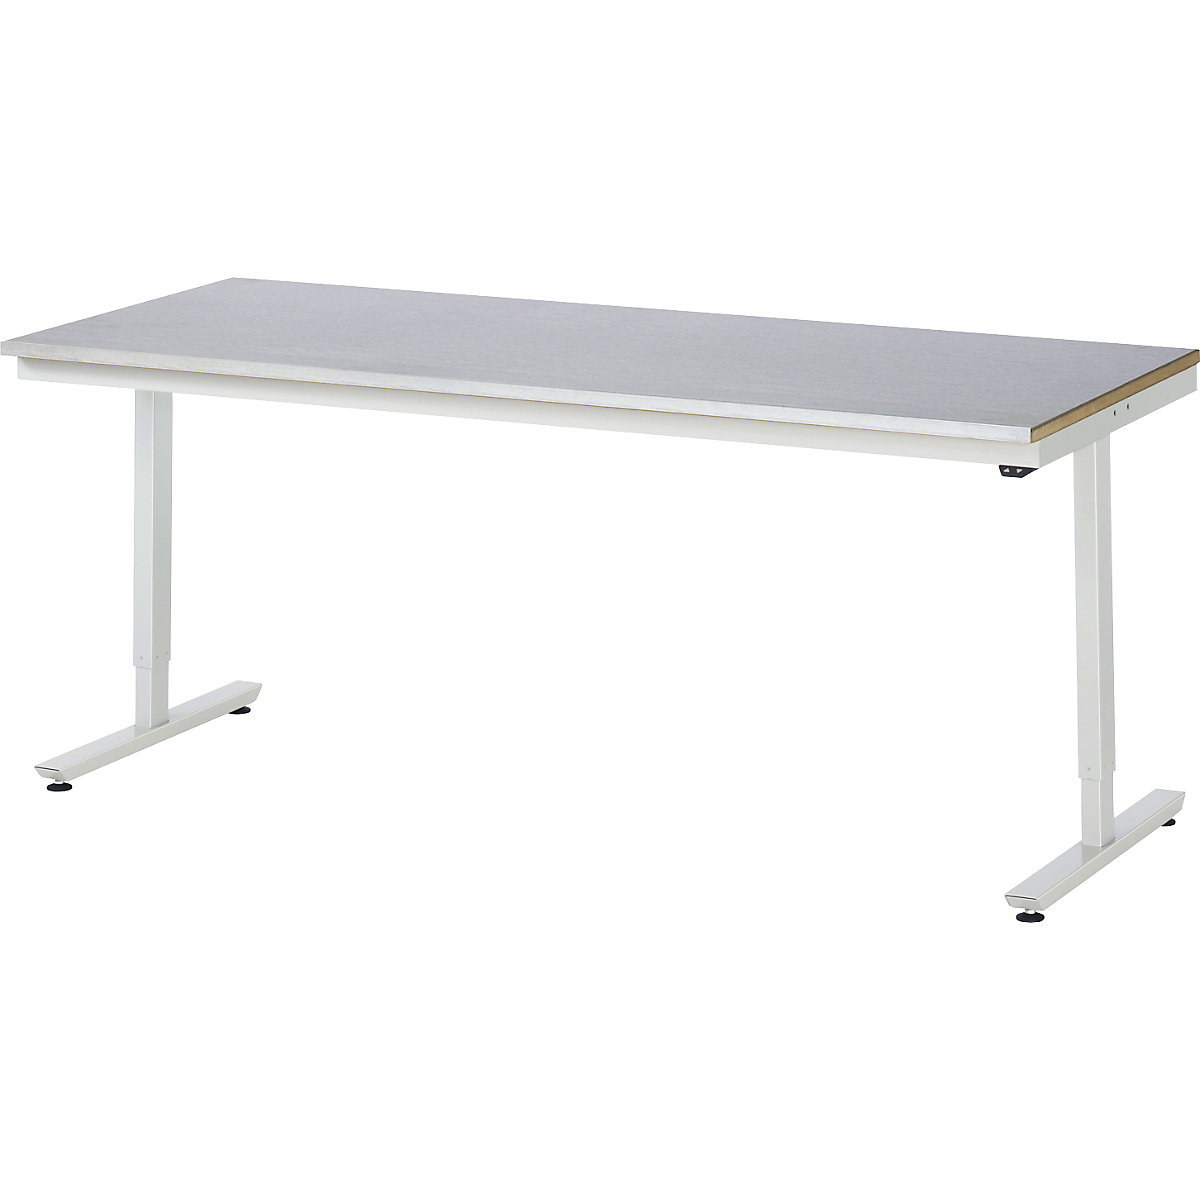 Psací stůl s elektrickým přestavováním výšky – RAU, ocelový povlak, nosnost 150 kg, š x h 2000 x 800 mm-12